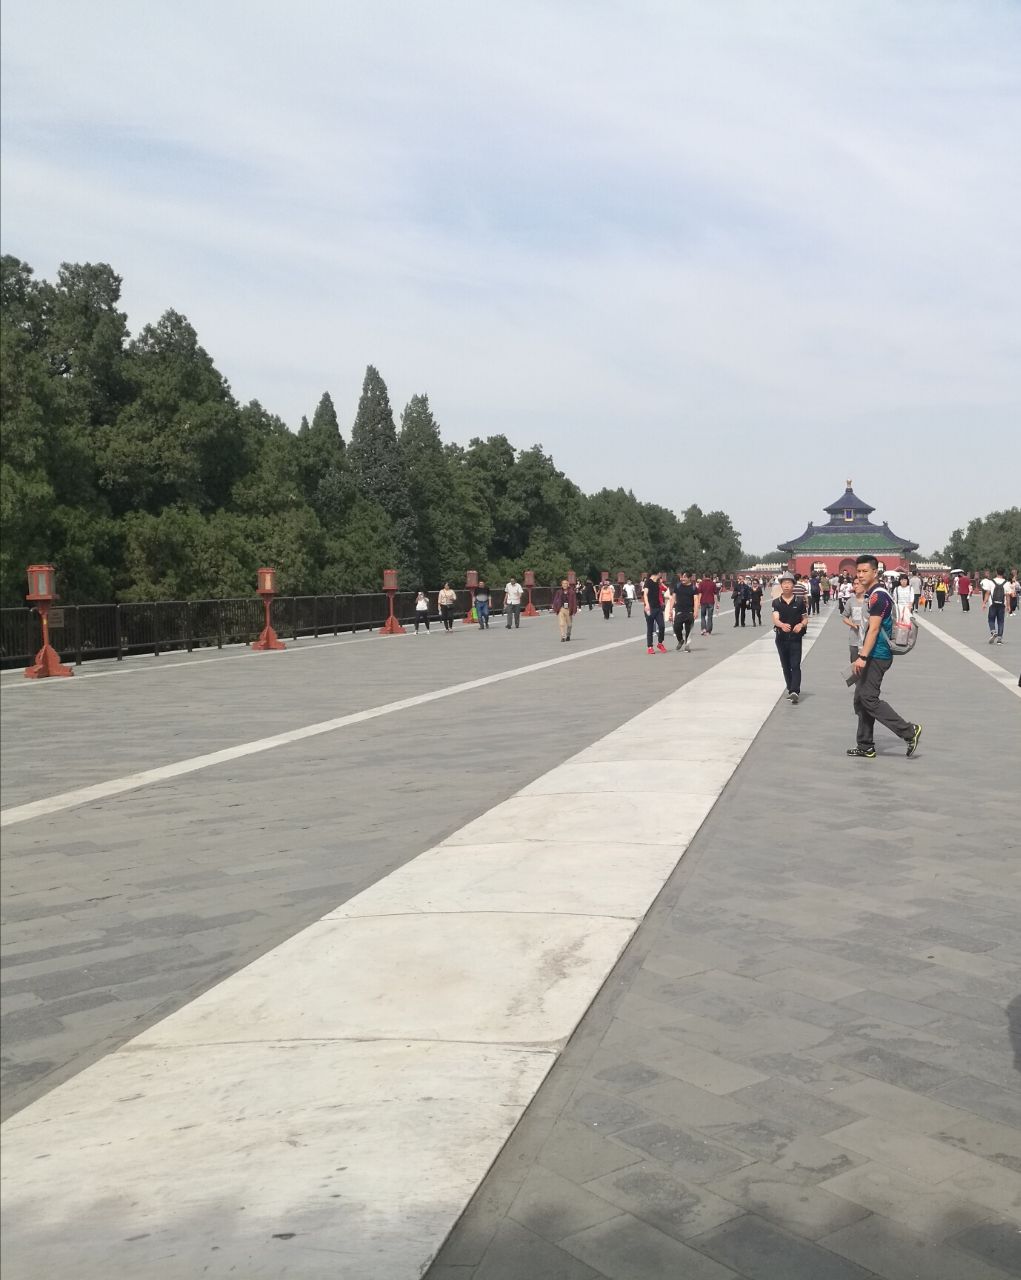 【携程攻略】北京丹陛桥景点,丹陛桥连接天坛的祈年殿和皇穹宇,是一条